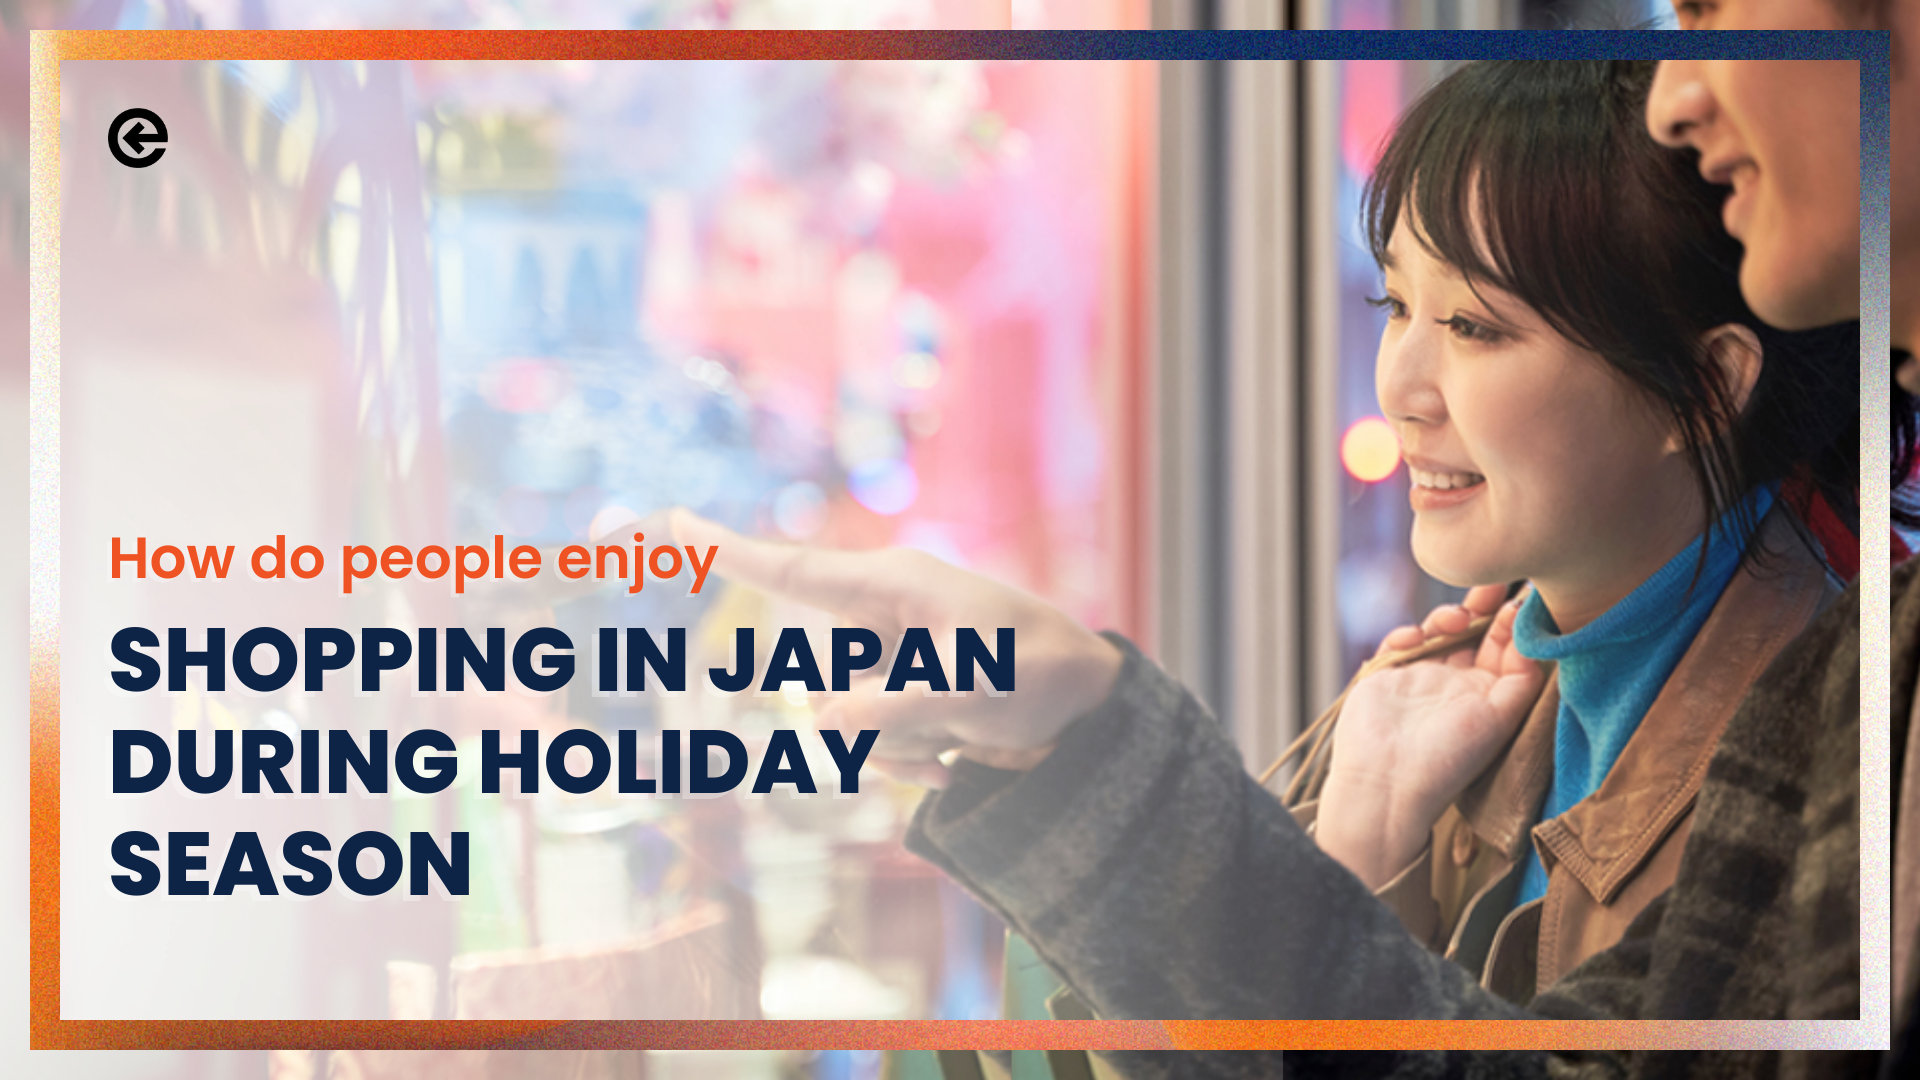 ¿Cómo se disfruta de las compras en Japón durante las vacaciones?